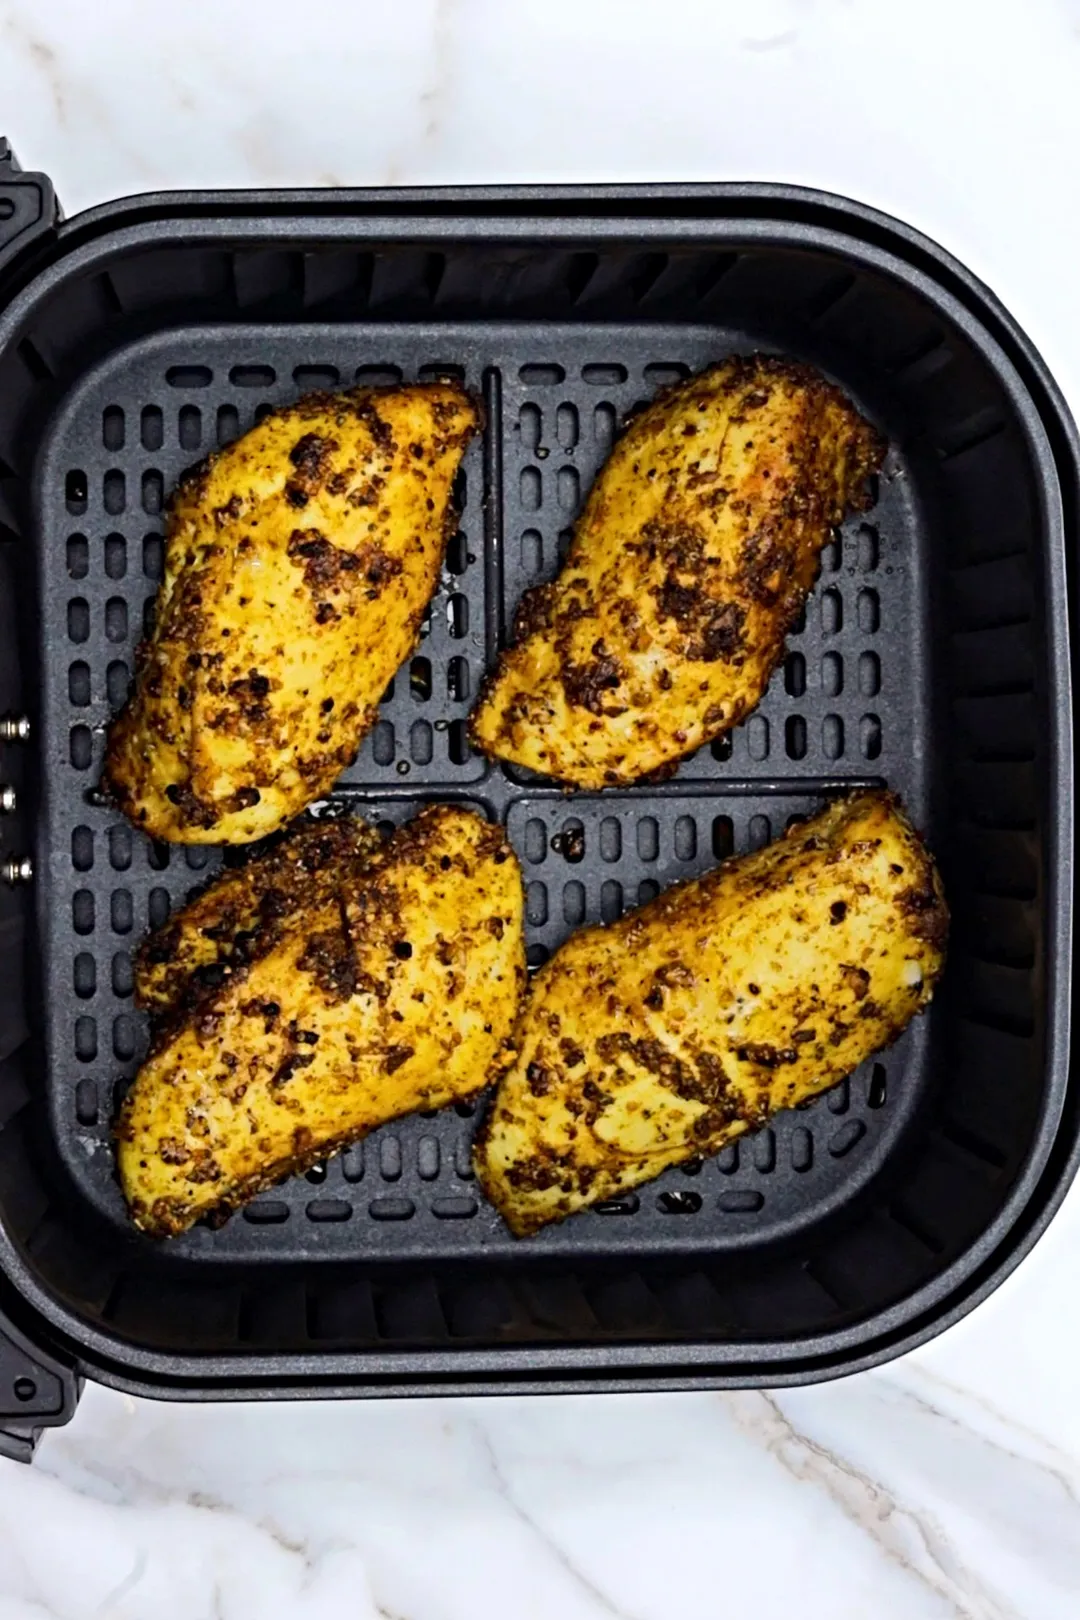 four chicken breasts in air fryer basket